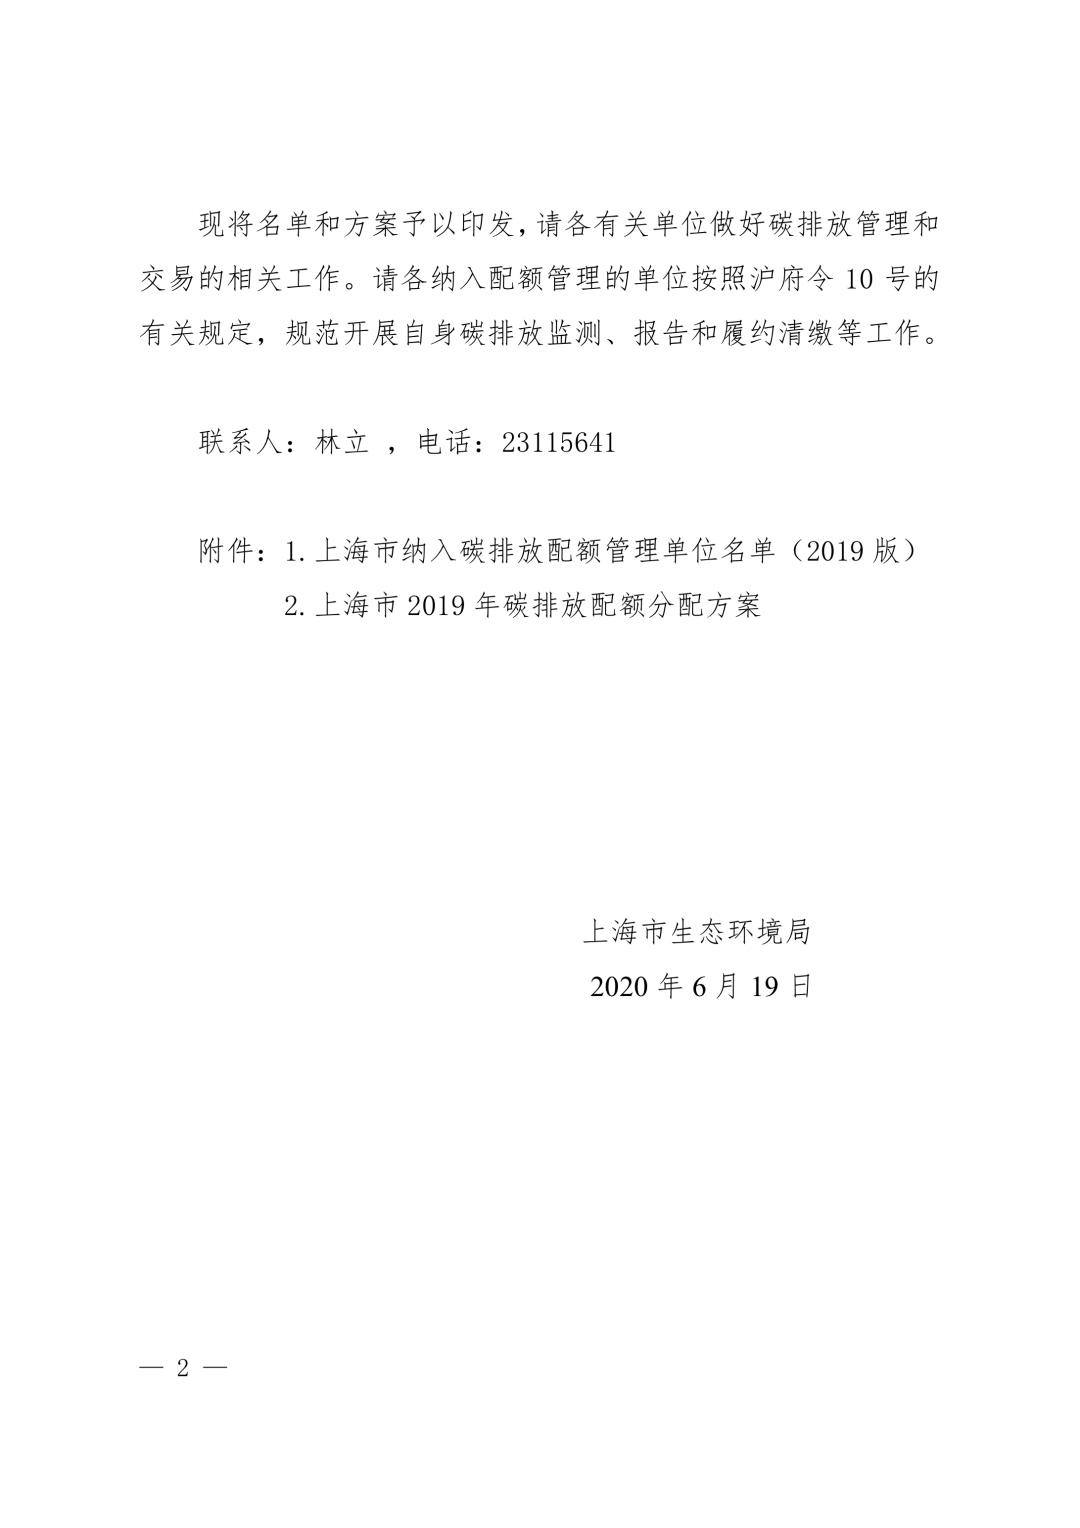 【关注】上海市生态环境局关于印发《上海市纳入碳排放配额管理单位名单（2019版）》及《上海市2019年碳排放配额分配方案》的通知(图2)